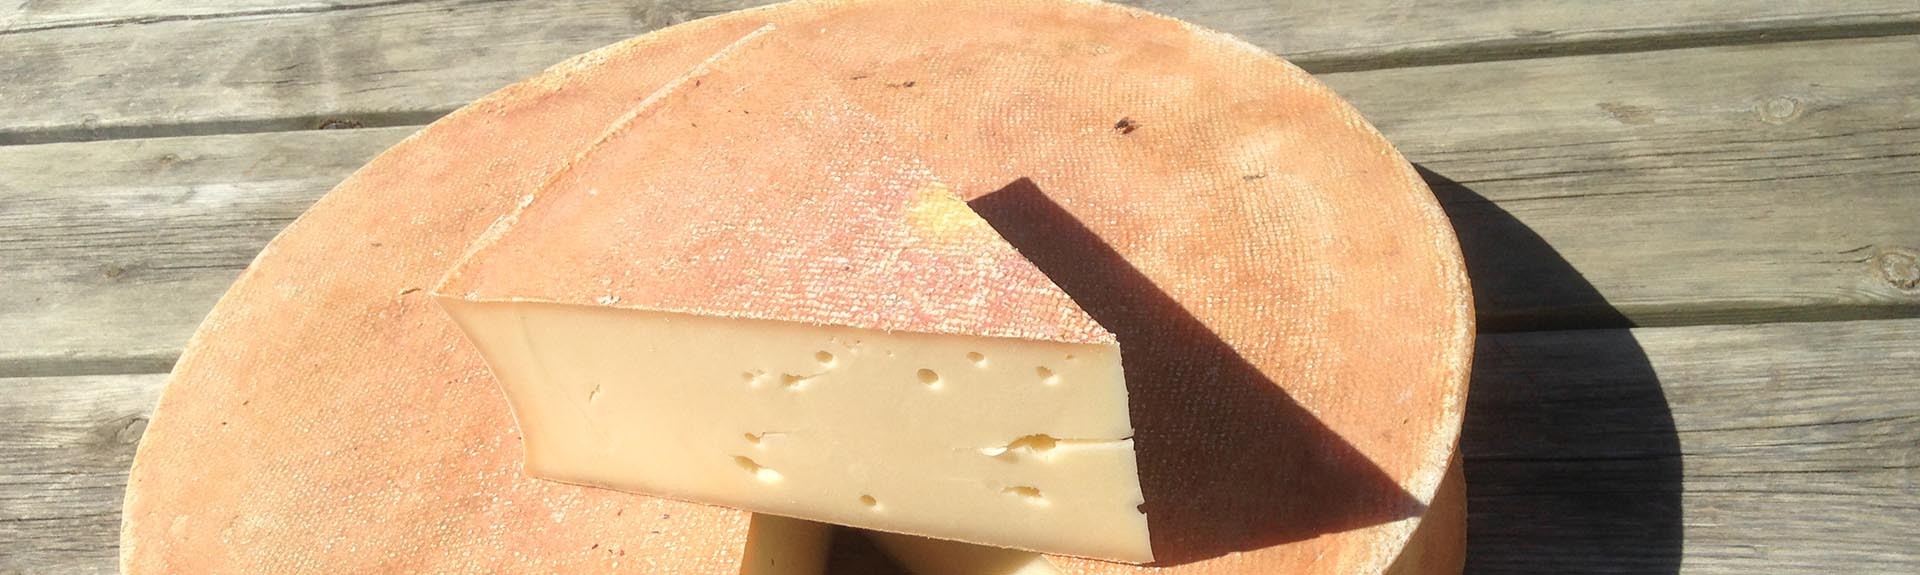 Le fromage Abondance